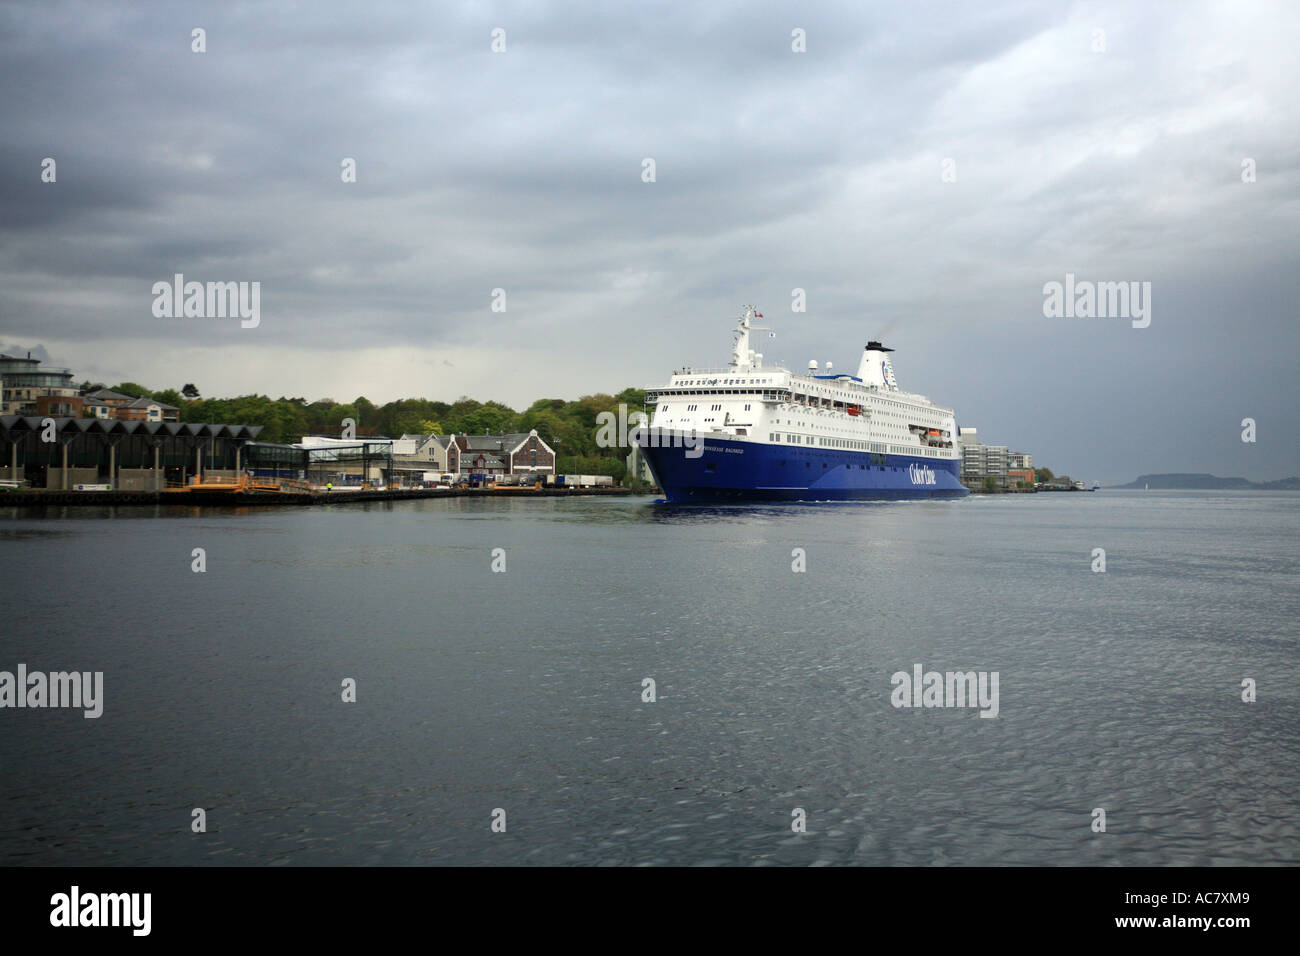 Luxury liner, Stavanger, Norway Stock Photo